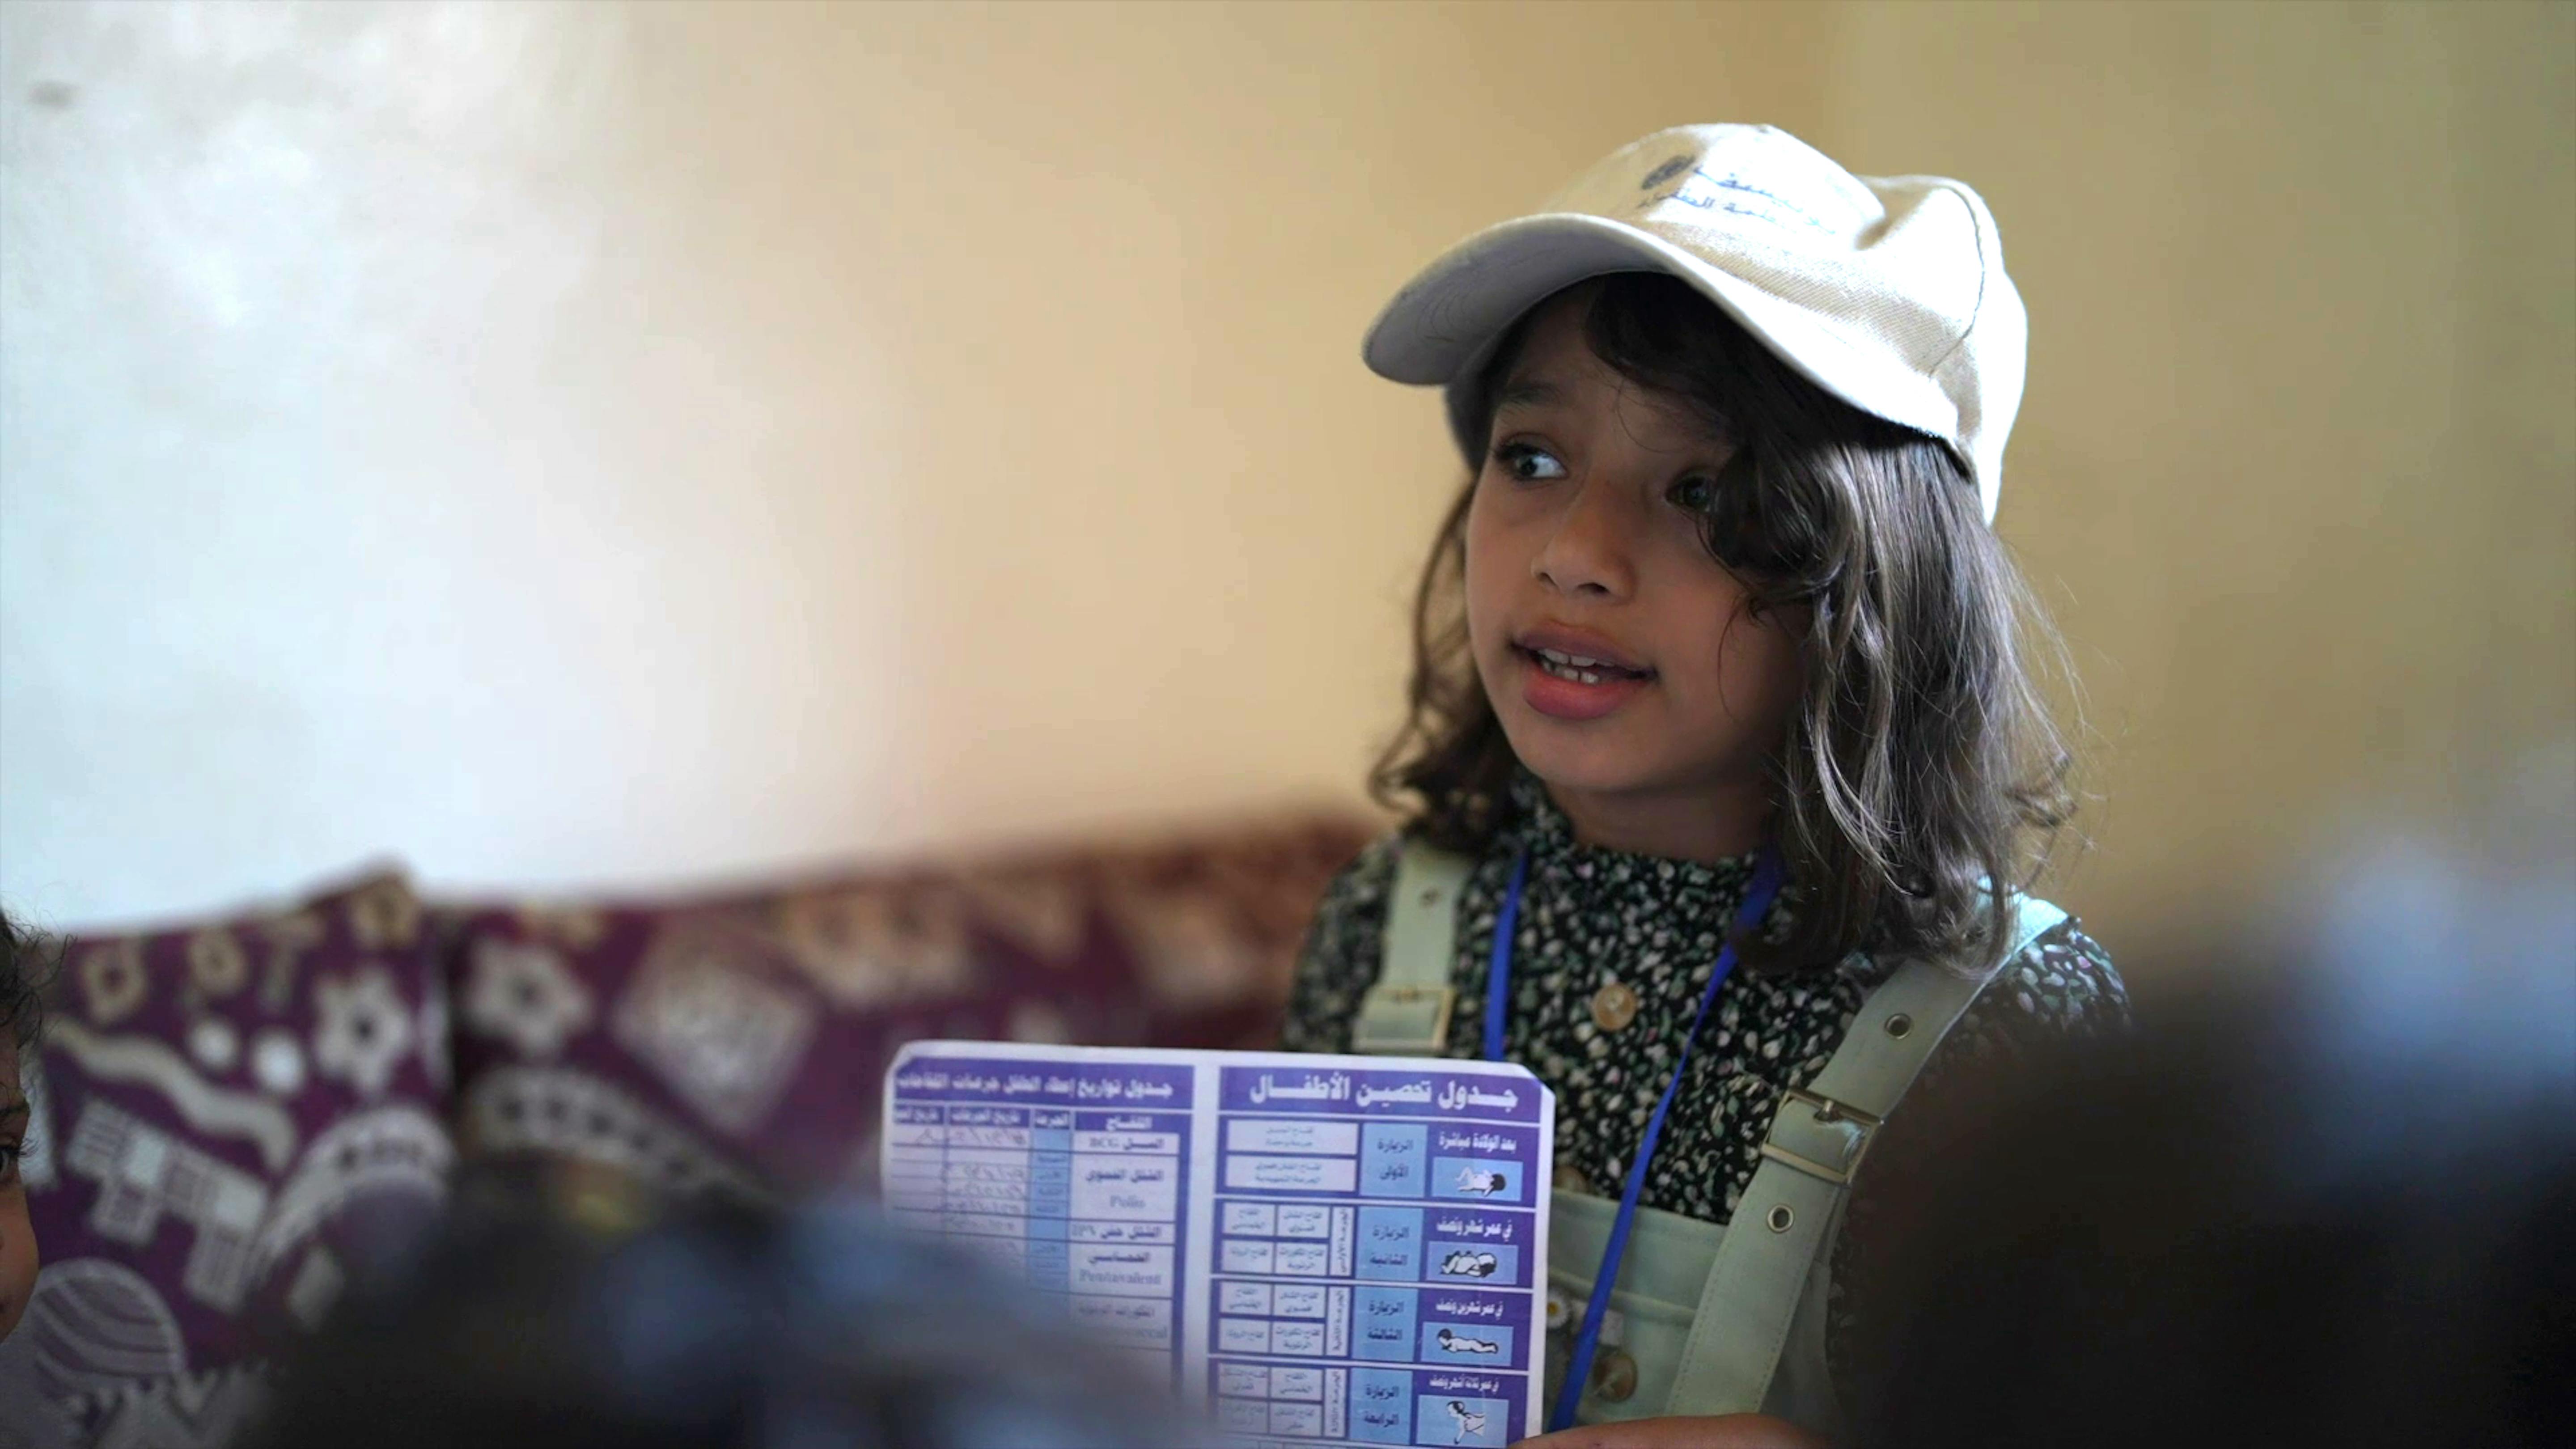 Leen ha 10 anni ed ha già visto il potenziale salvavita dell’immunizzazione di routine. Con un opuscolo che descrive in dettaglio i benefici dei vaccini, e armata di grande entusiasmo, utilizza il suo tempo libero per andare porta a porta nel suo quartiere ad Aden, nel sud dello Yemen